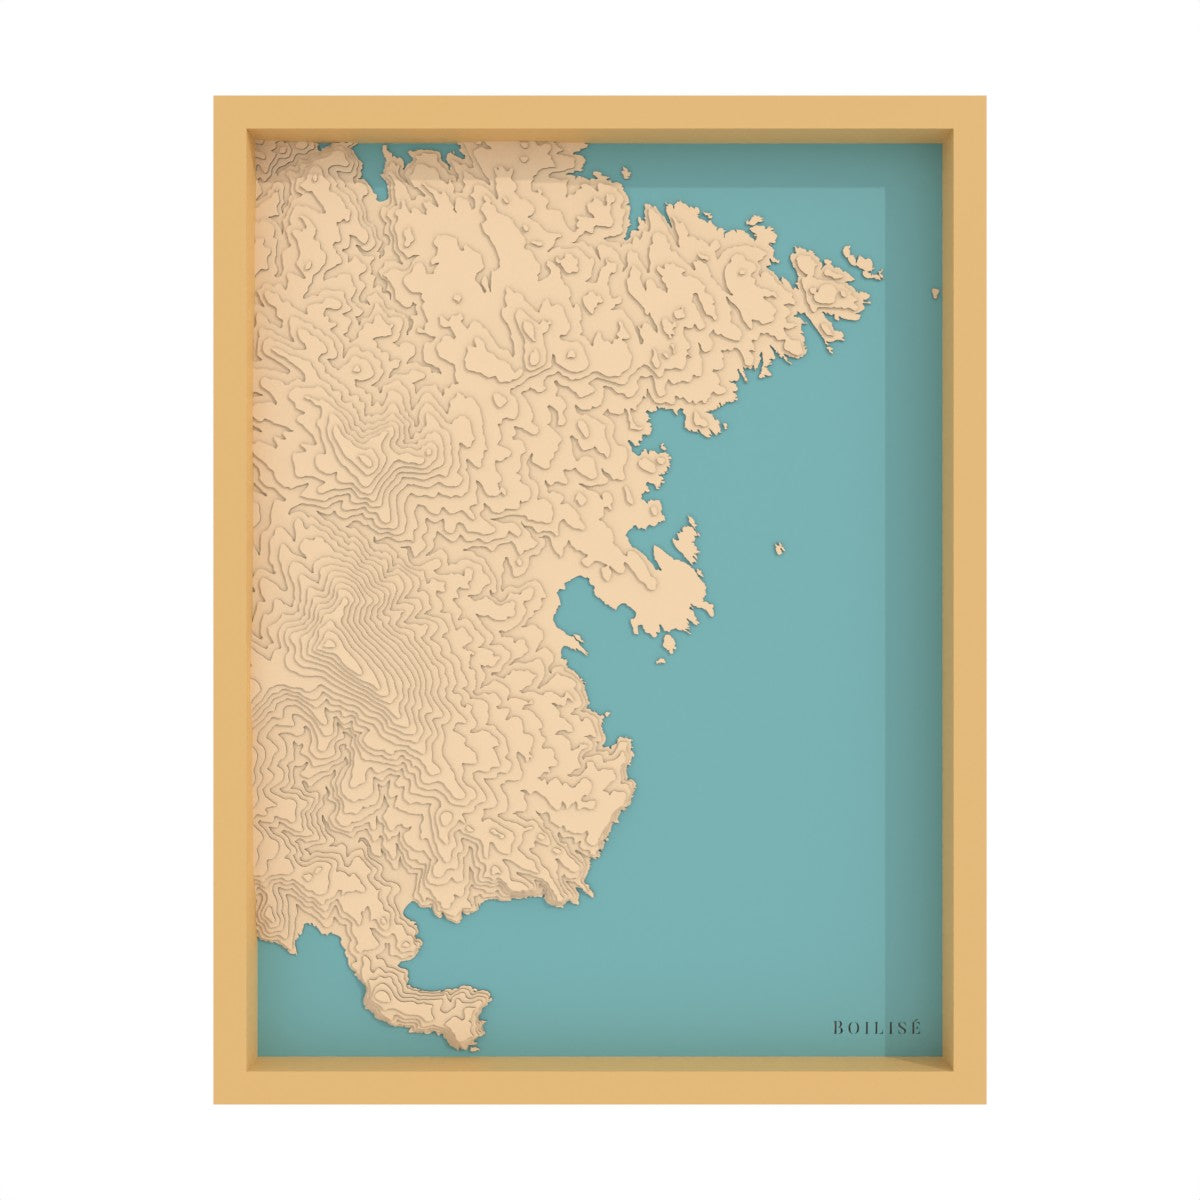 Map of Cadaqués